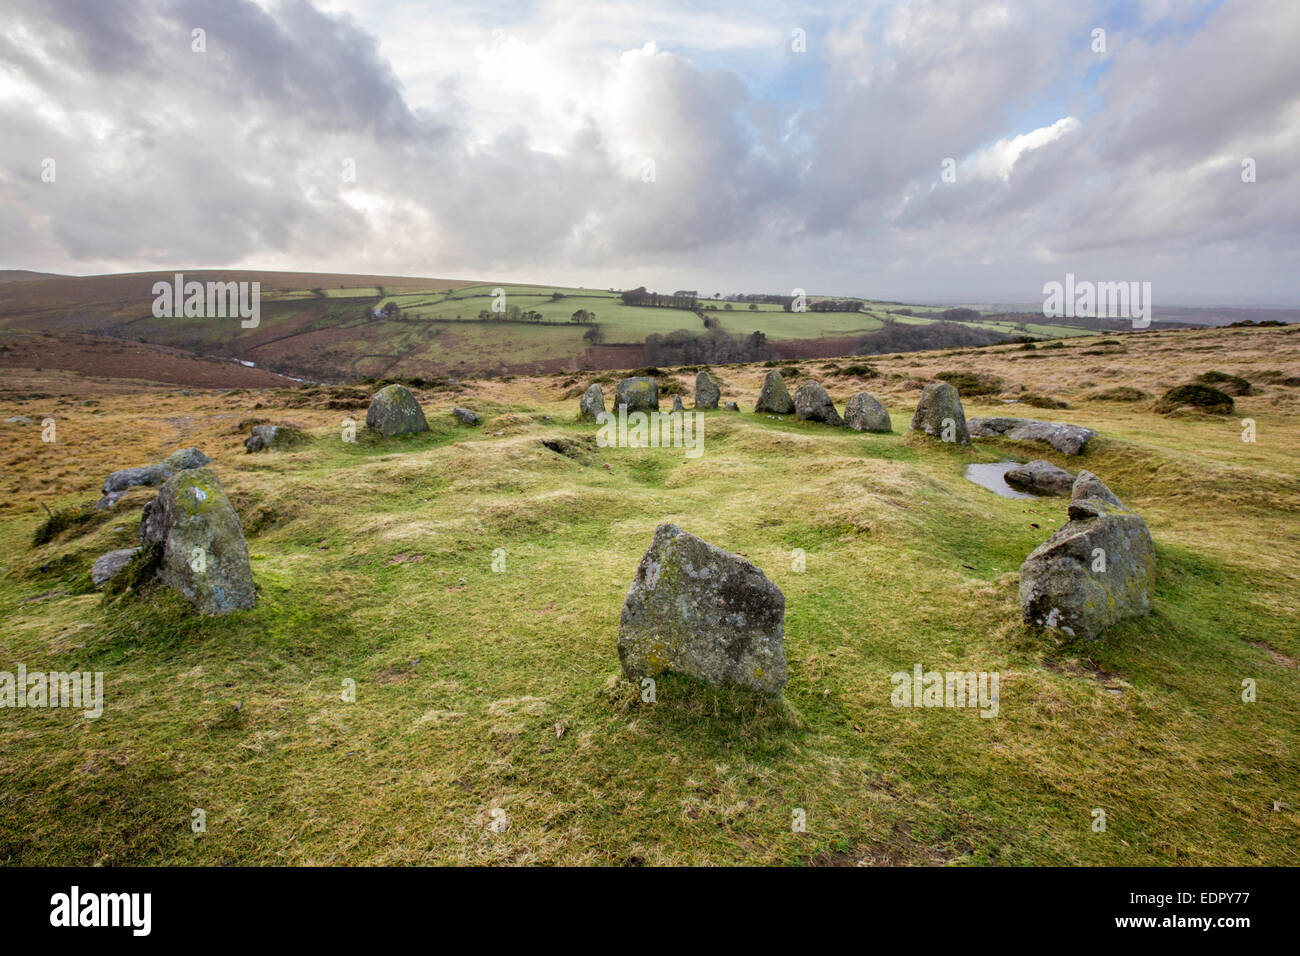 Neuf jeunes filles stone circle près du village de Dartmoor Belstone, Dartmoor, dans le Devon, England, UK Banque D'Images